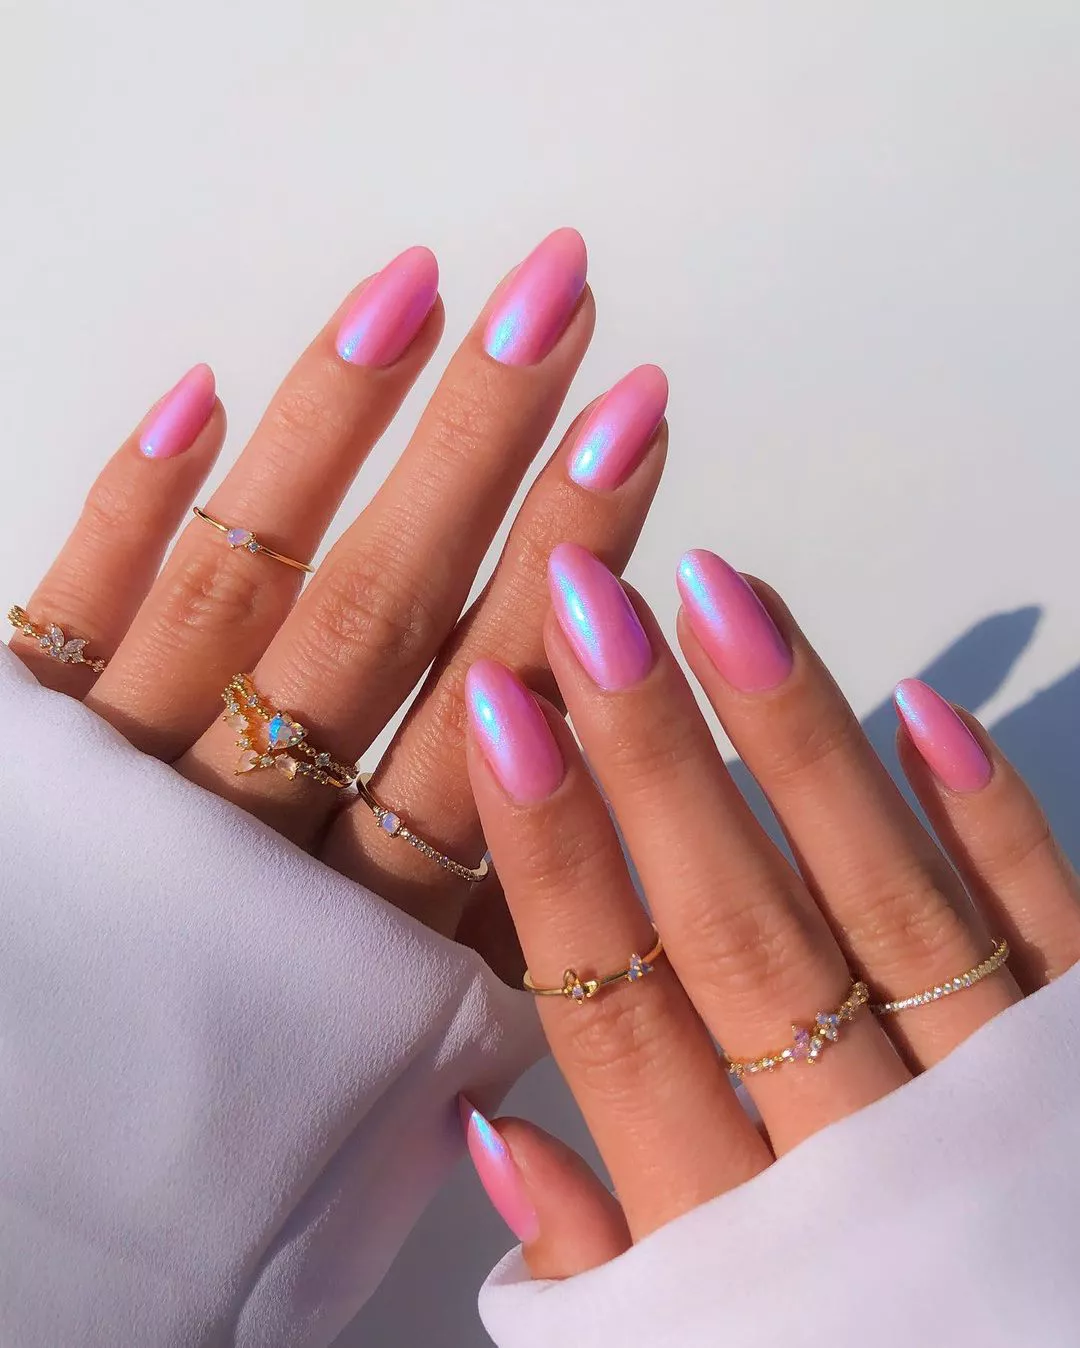 Iridescent bubblegum pink nails.